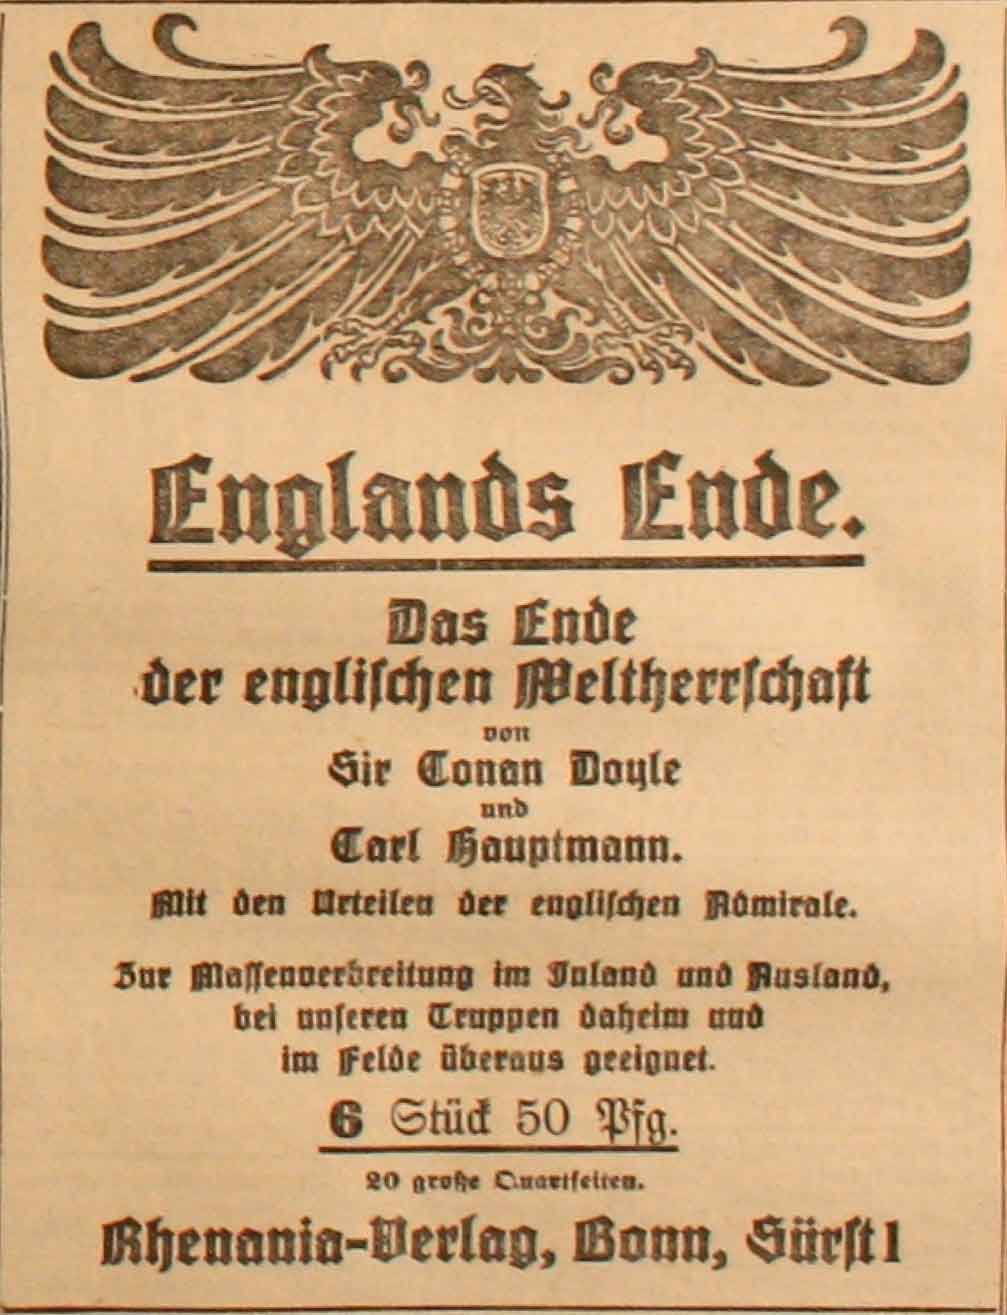 Anzeige in der Deutschen Reichs-Zeitung vom 22. Februar 1915